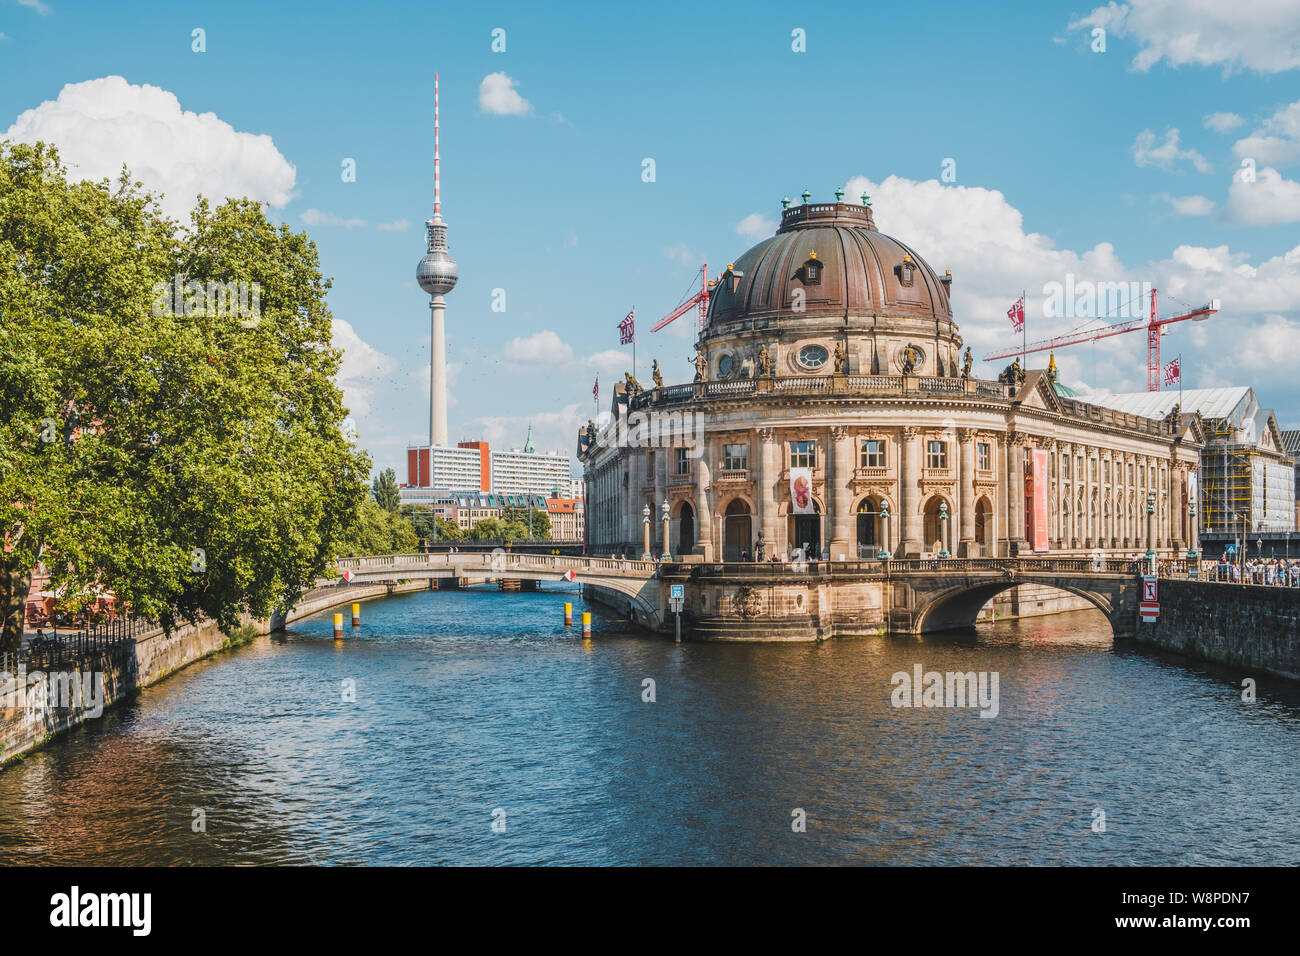 Berlin, Deutschland - Juni 2019: Berlin City mit Fernsehturm (Fernsehturm), Bode Museum und Spree im Museum Insel auf Sommer Tag Stockfoto